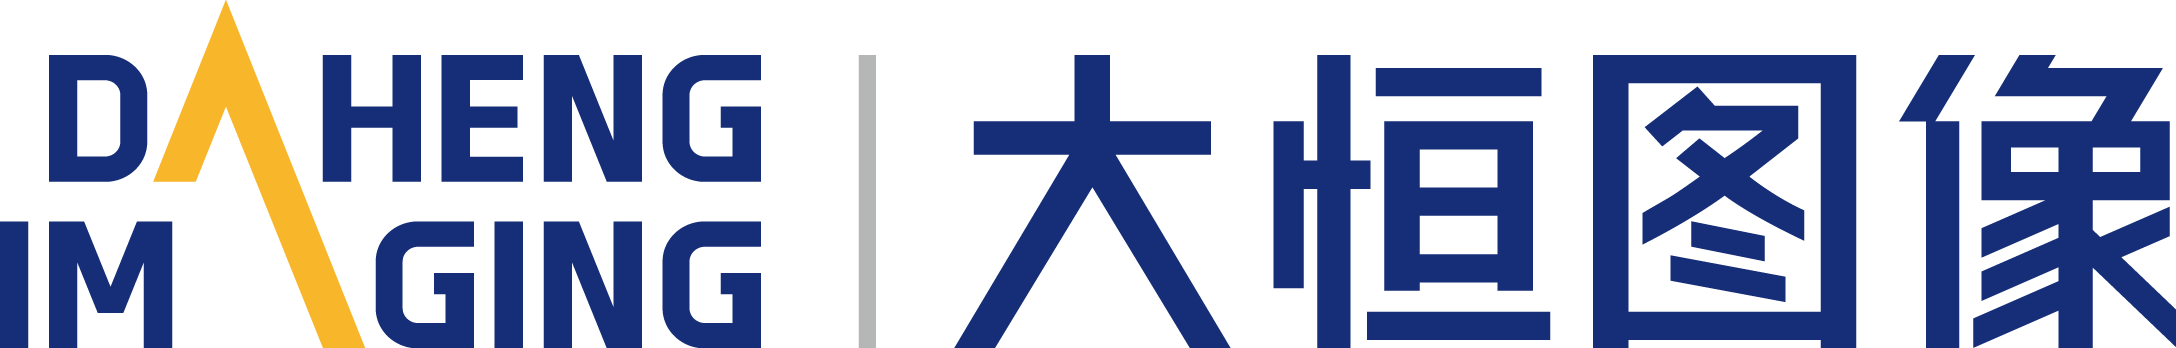 Daheng Logo